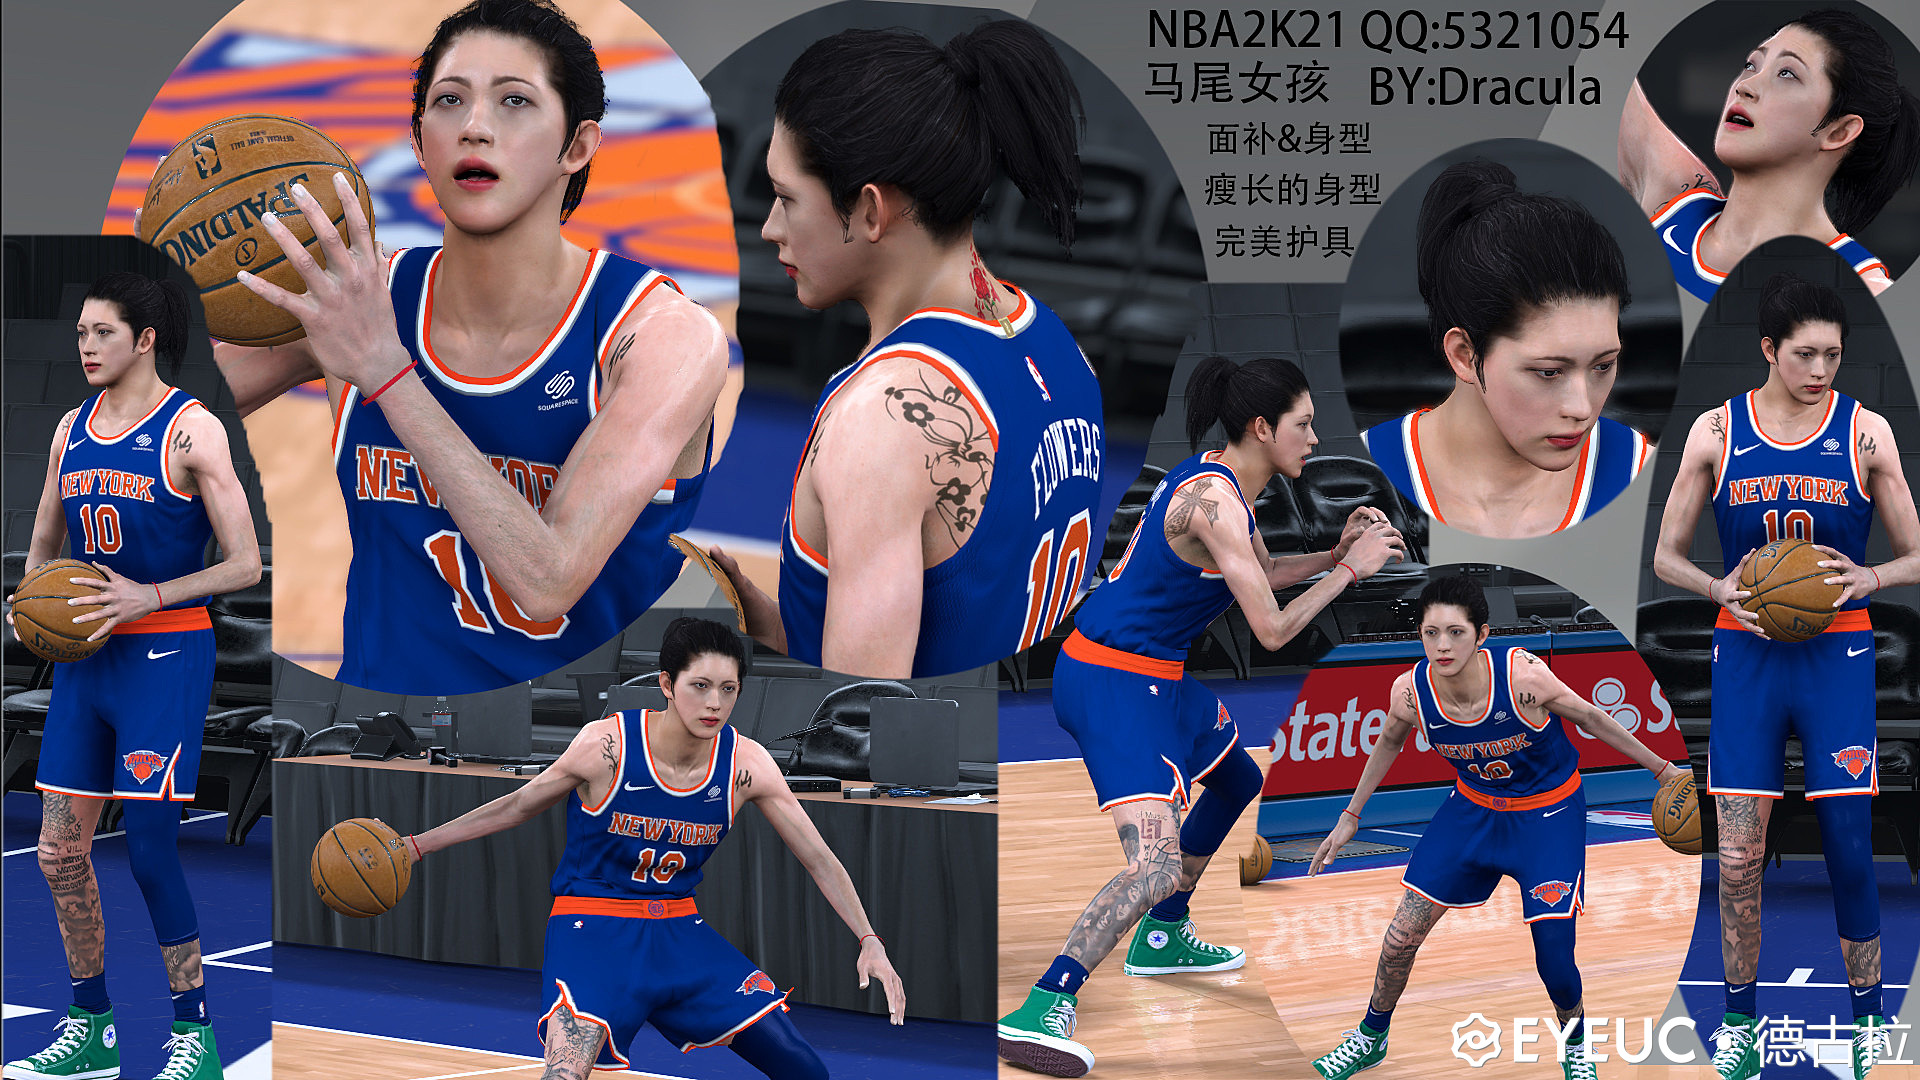 NBA2K21 马尾少女 BY德古拉.jpg